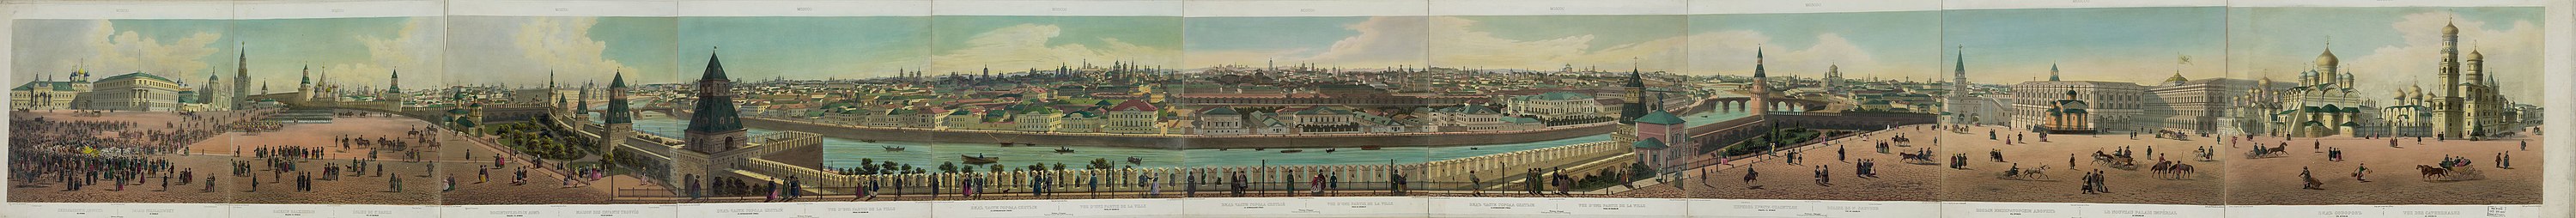 Д. С. Индейцев. Тайницкий башняһынан Кремль панорамаһы һәм Мәскәү йылғаһының аръяғы. 1848 йыл